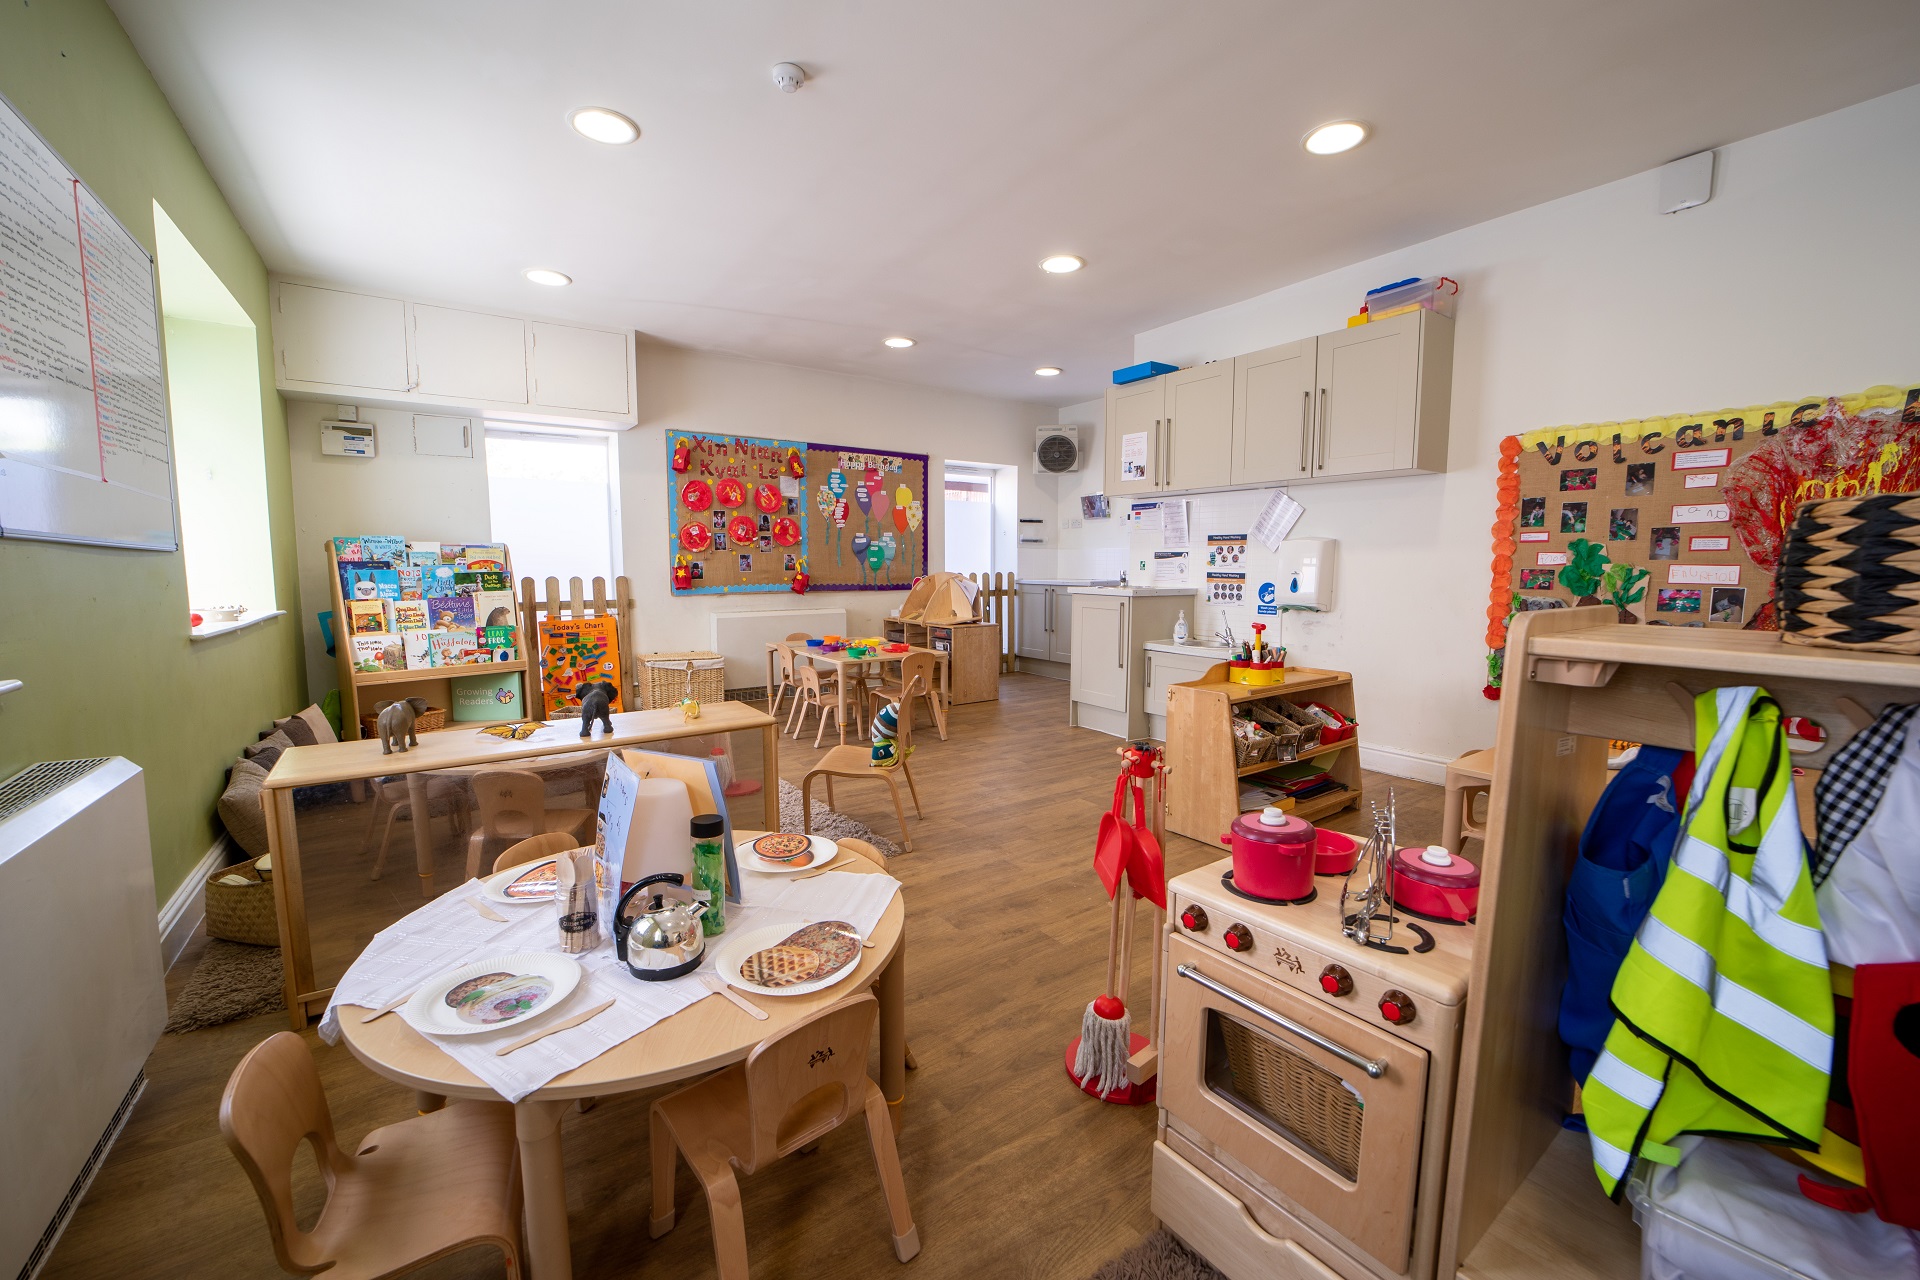 New Southgate Nursery images Preschool Room